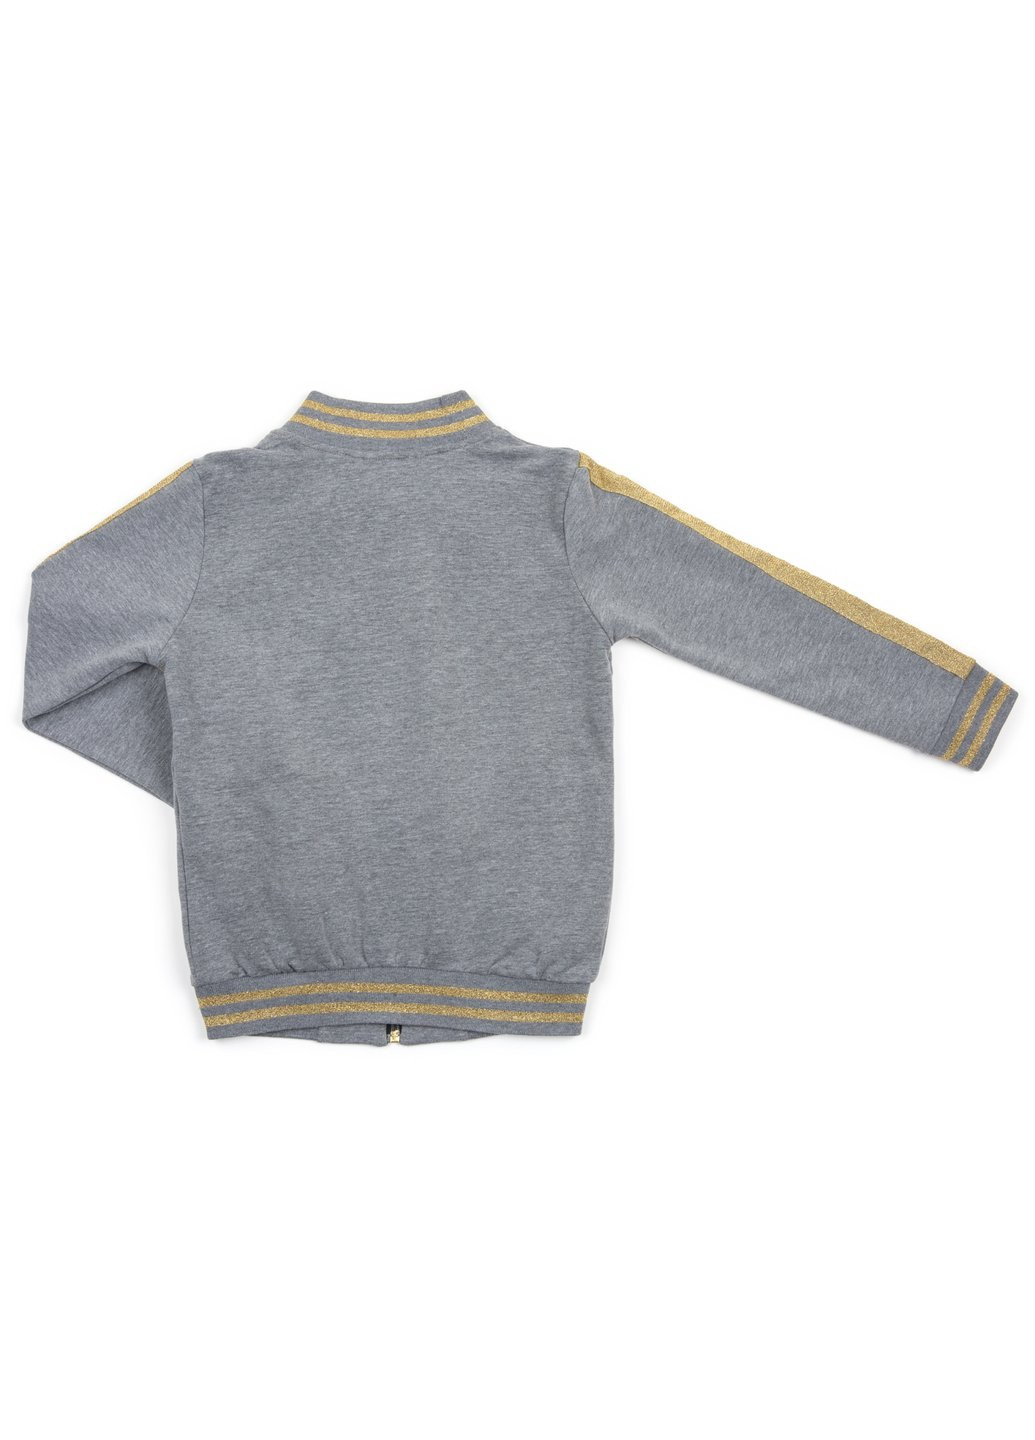 Комбинированный демисезонный набор детской одежды с золотыми лампасами (12986-134g-gray) Breeze